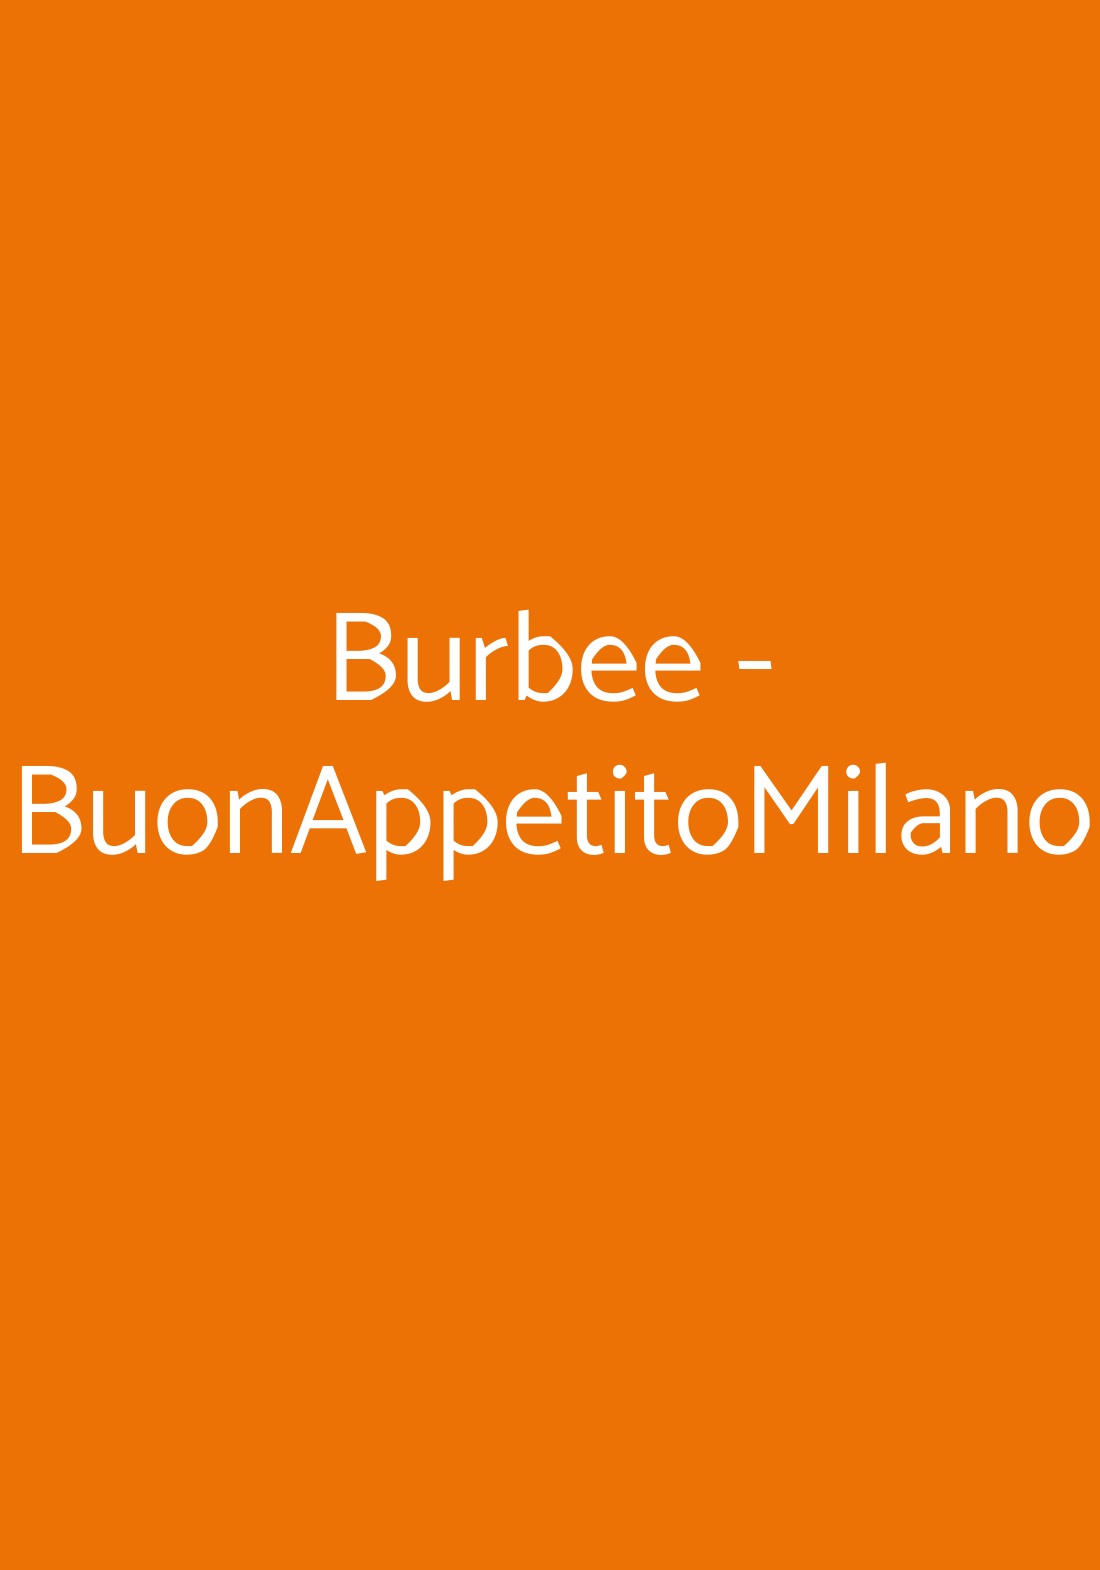 Burbee - BuonAppetitoMilano Milano menù 1 pagina